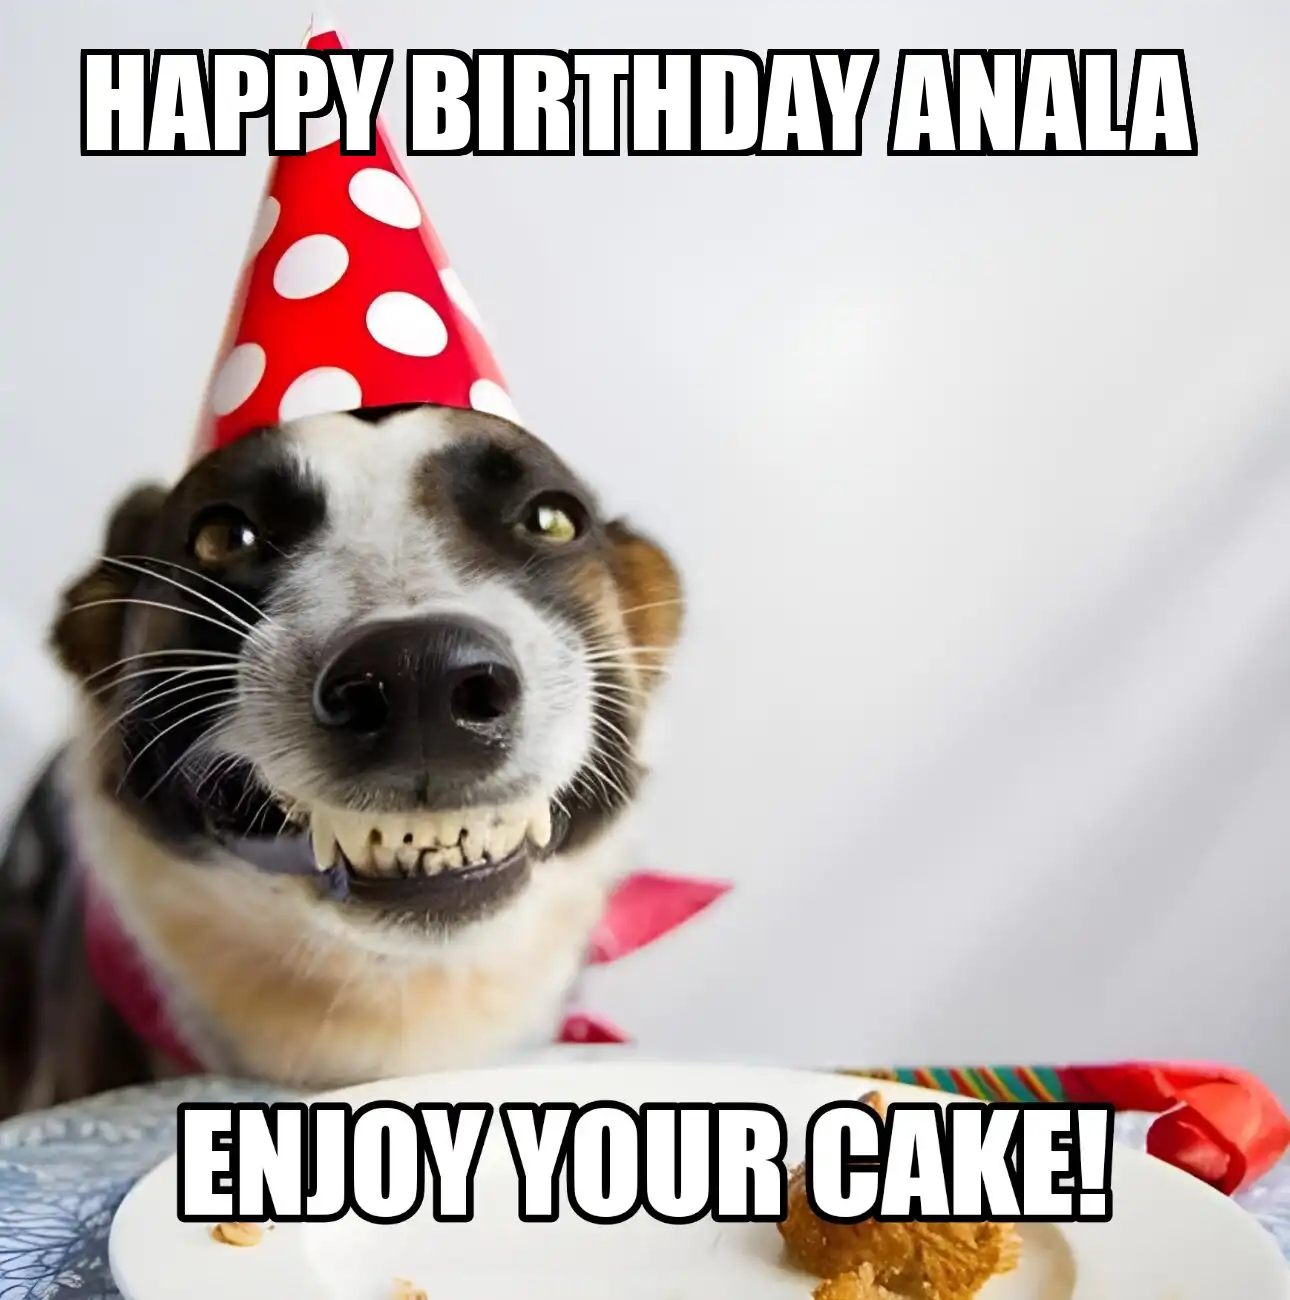 Happy Birthday Anala Enjoy Your Cake Dog Meme